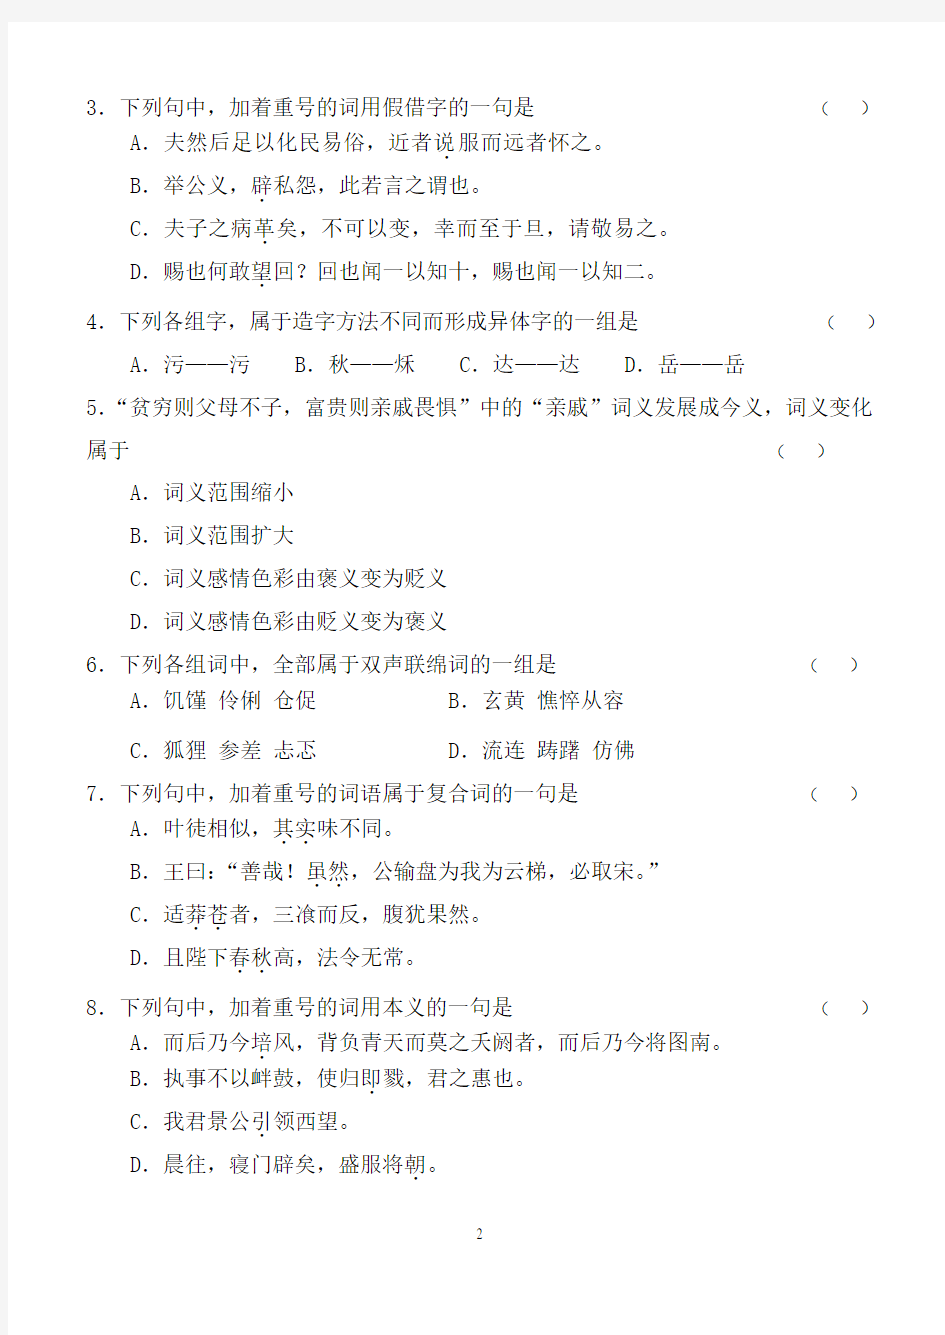 古代汉语第1阶段练习题(字词)